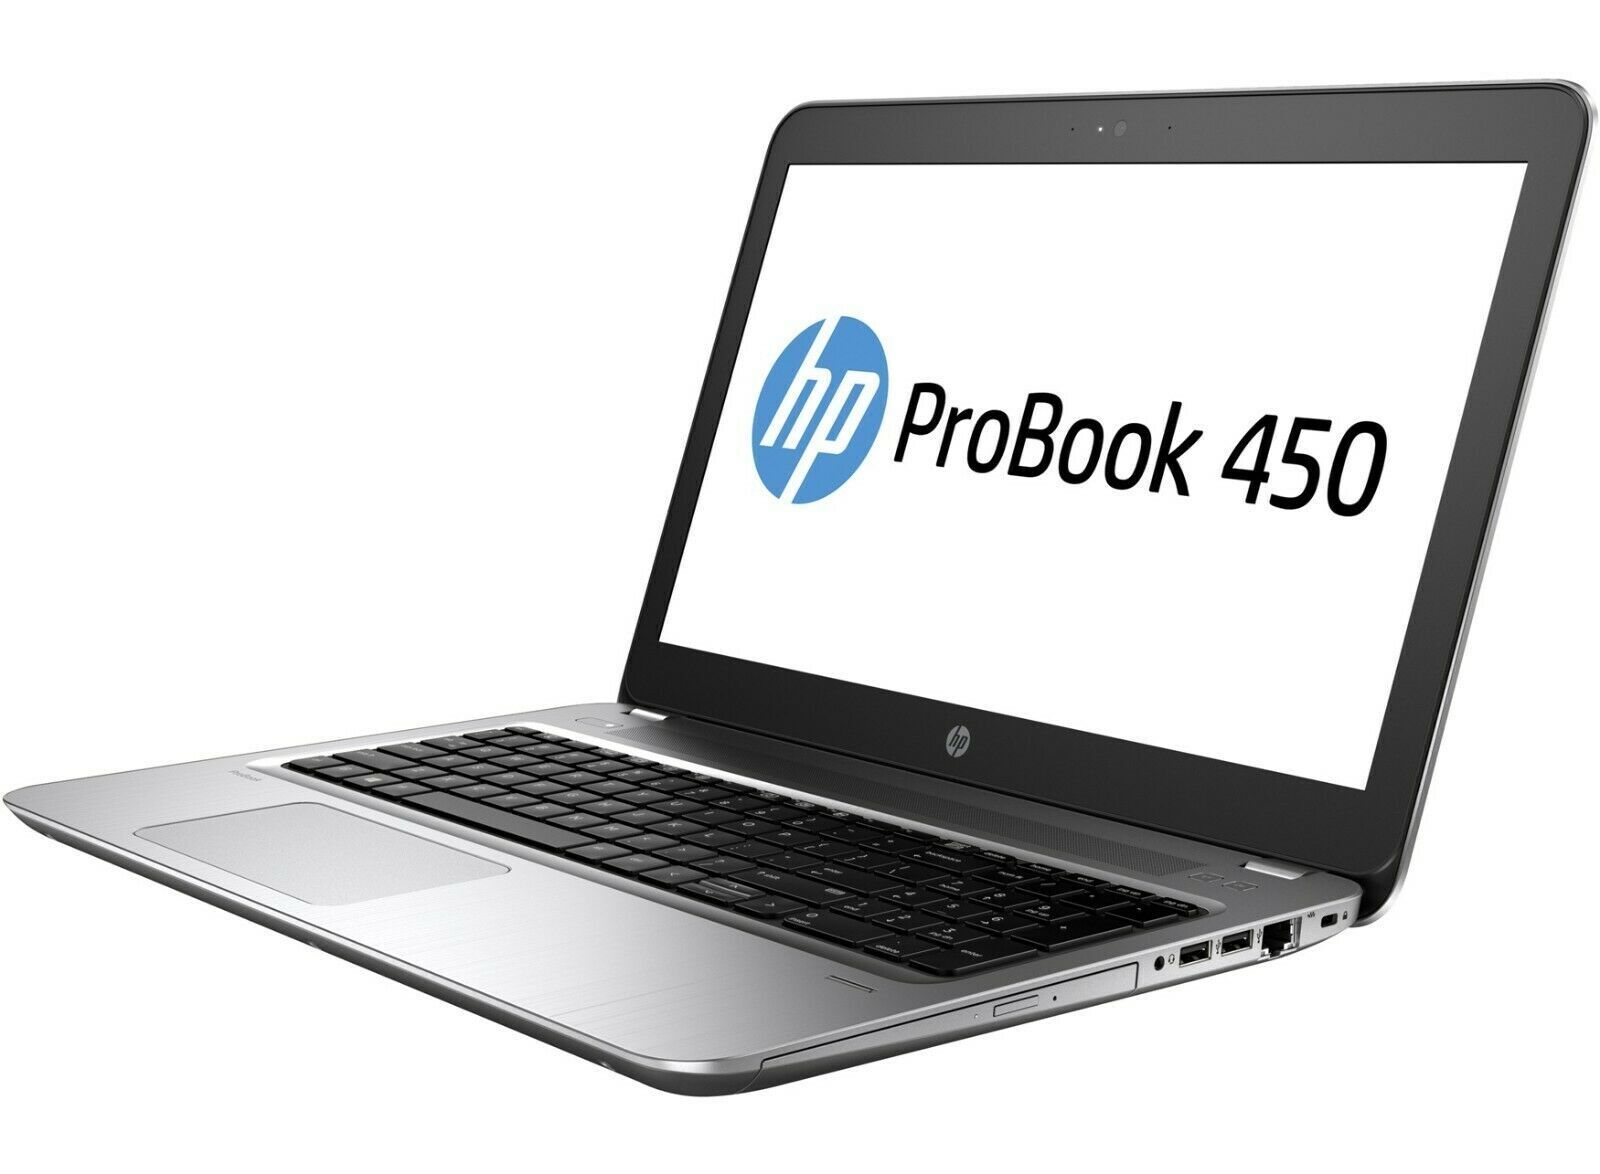 HP ProBook 450 G6 Intel i7 8565u 1.80Ghz 16GB RAM 512GB SSD 15.6" FHD Win 10 - B Grade